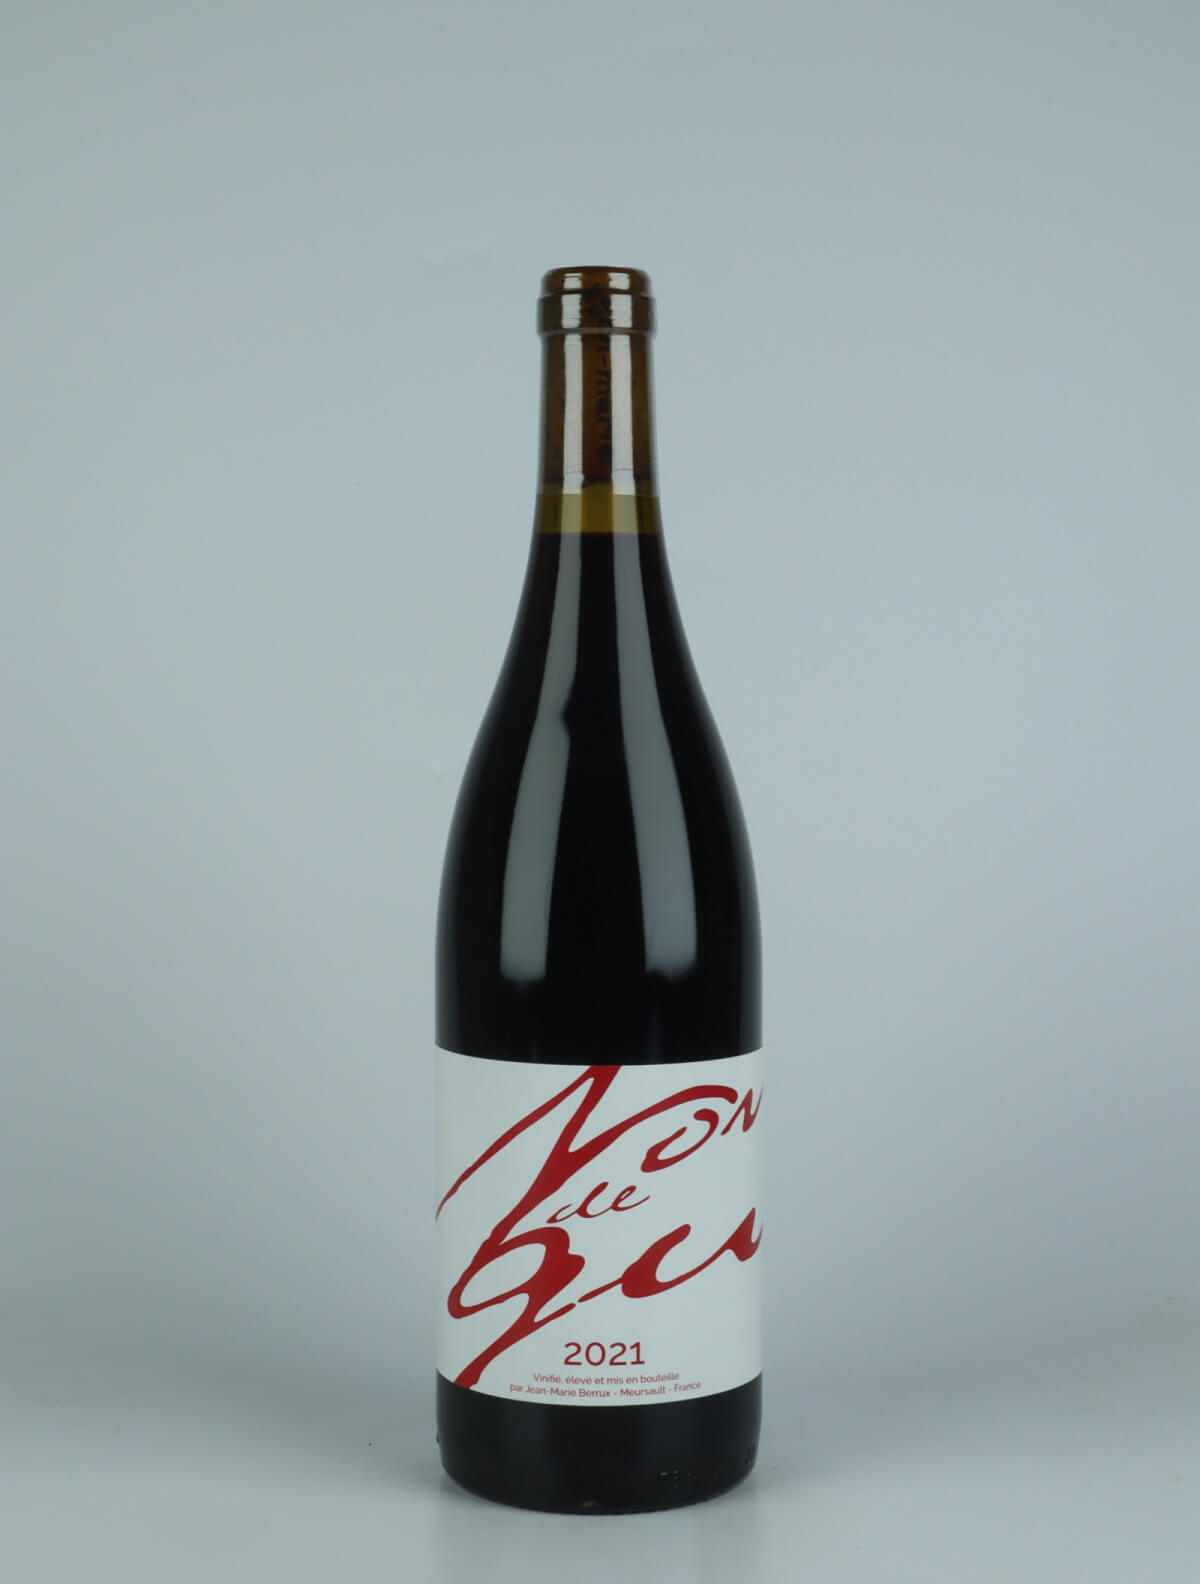 En flaske 2021 Nondegu Rødvin fra Jean-Marie Berrux, Bourgogne i Frankrig